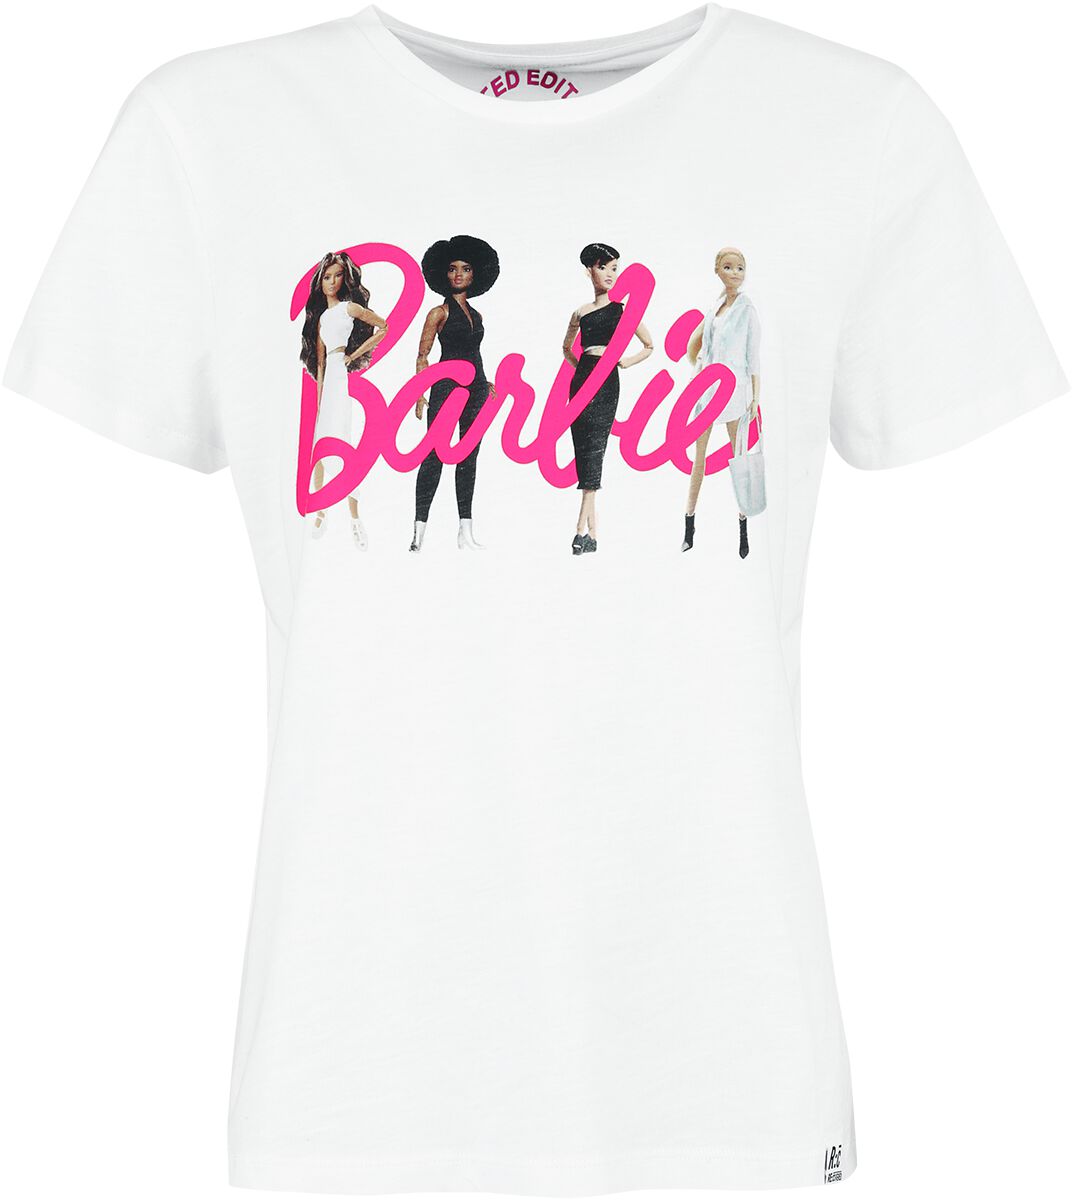 Barbie T-Shirt - Recovered - Here Come The Girls - M bis L - für Damen - Größe M - weiß  - Lizenzierter Fanartikel